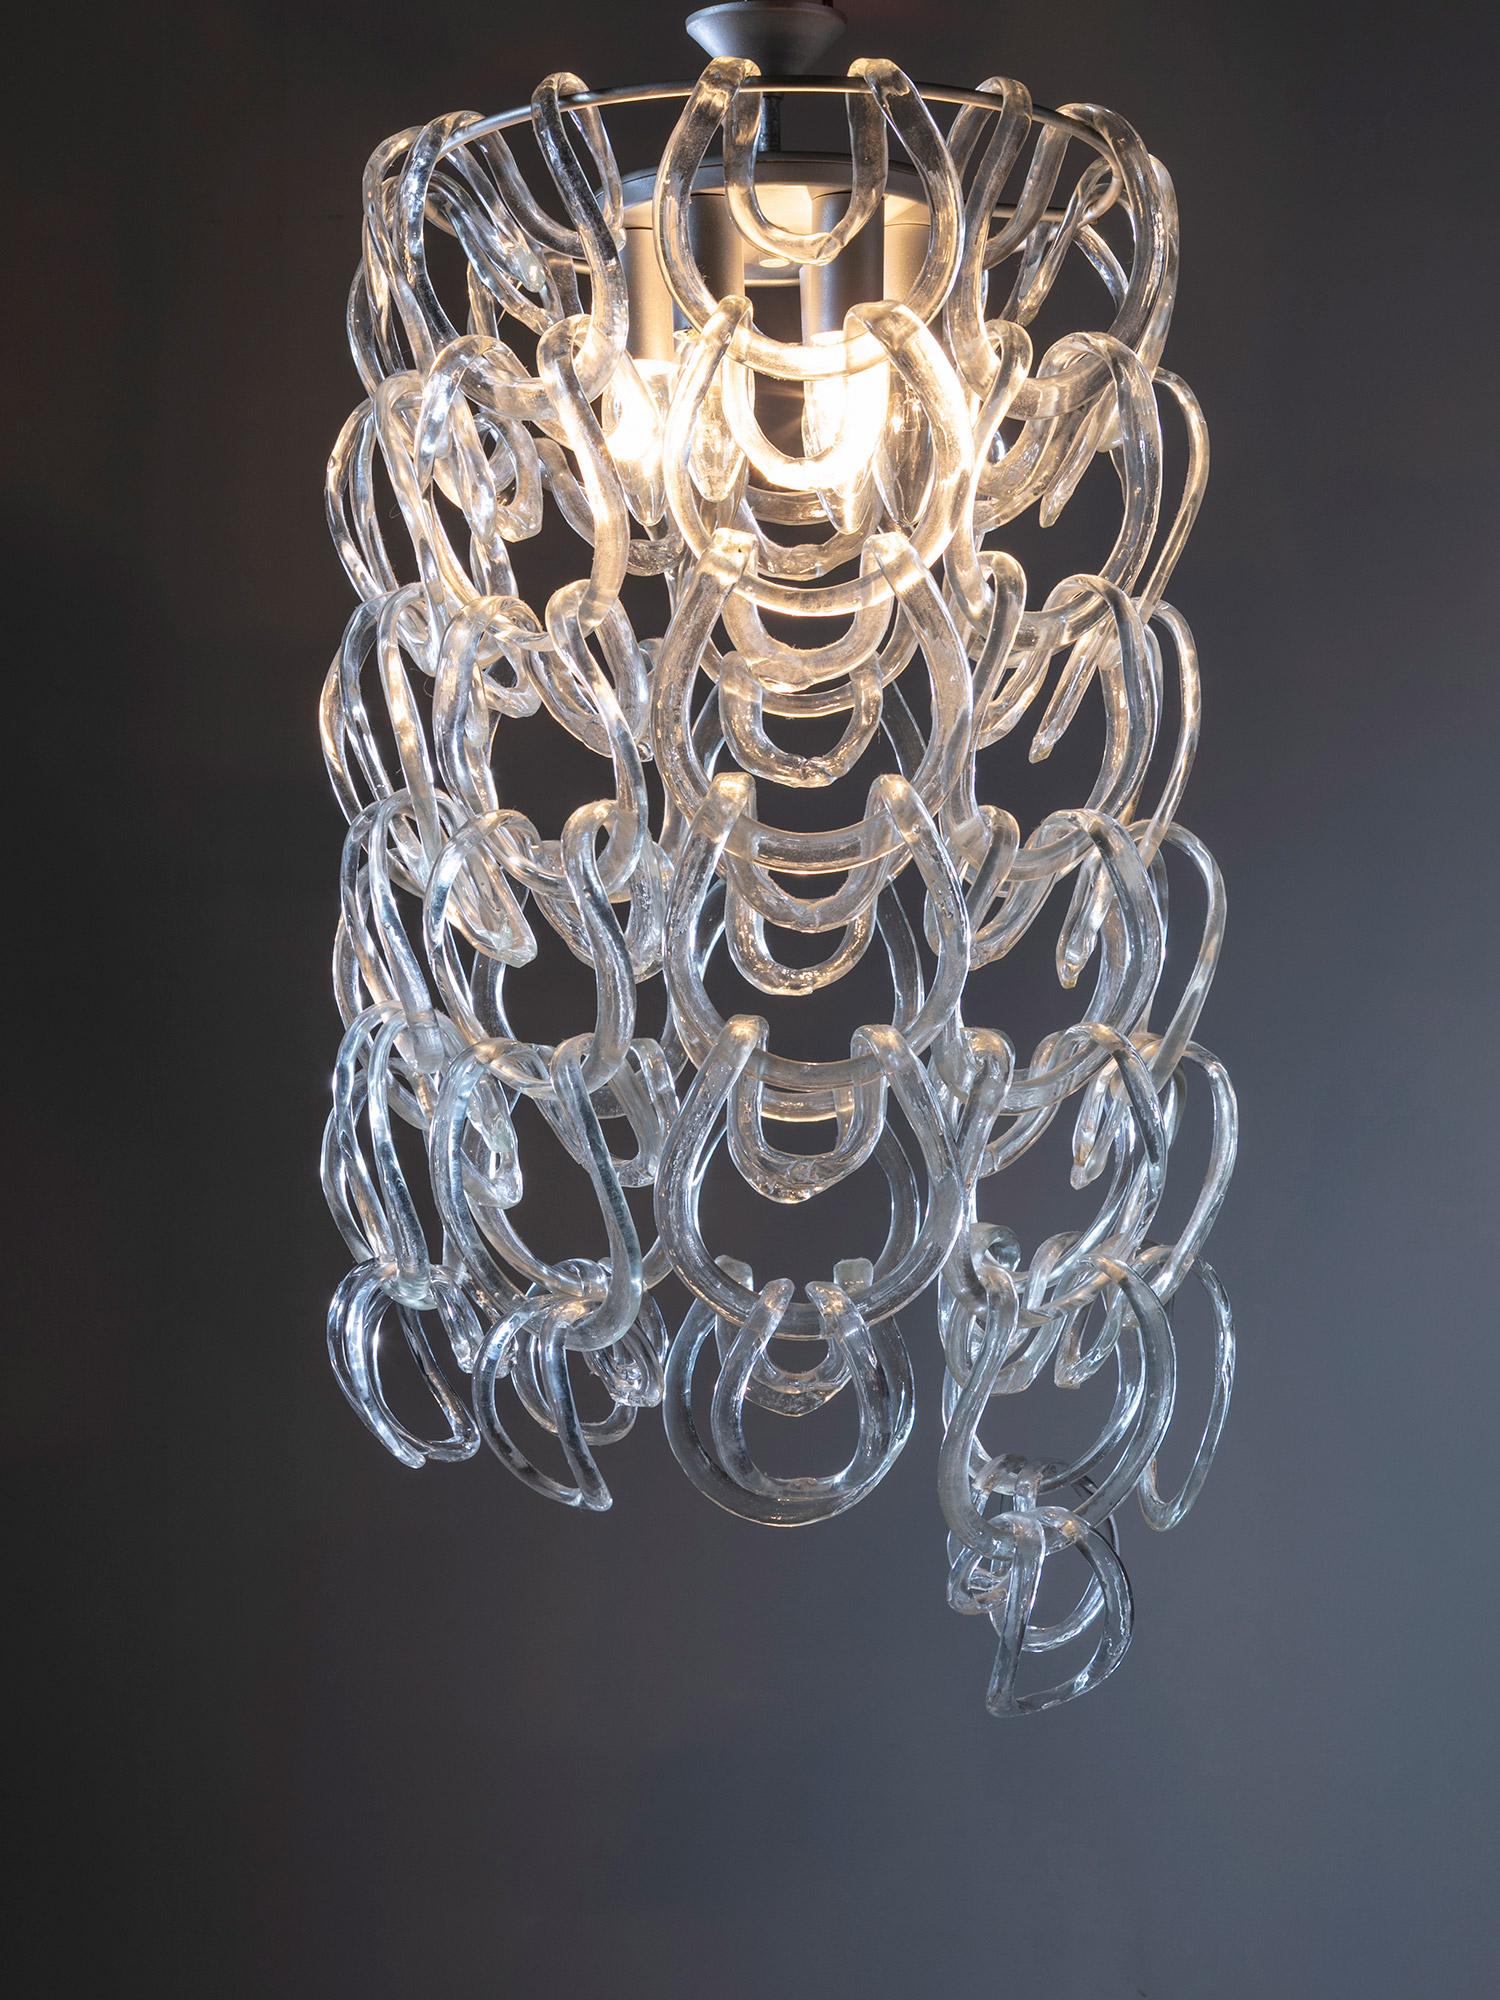 Giogali-Kronleuchter von Angelo Mangiarotti für Vistosi, Murano.
Der runde Metallrahmen ermöglicht es, die Glasbänder miteinander zu verbinden, wodurch ein glänzender Glasfall entsteht. 